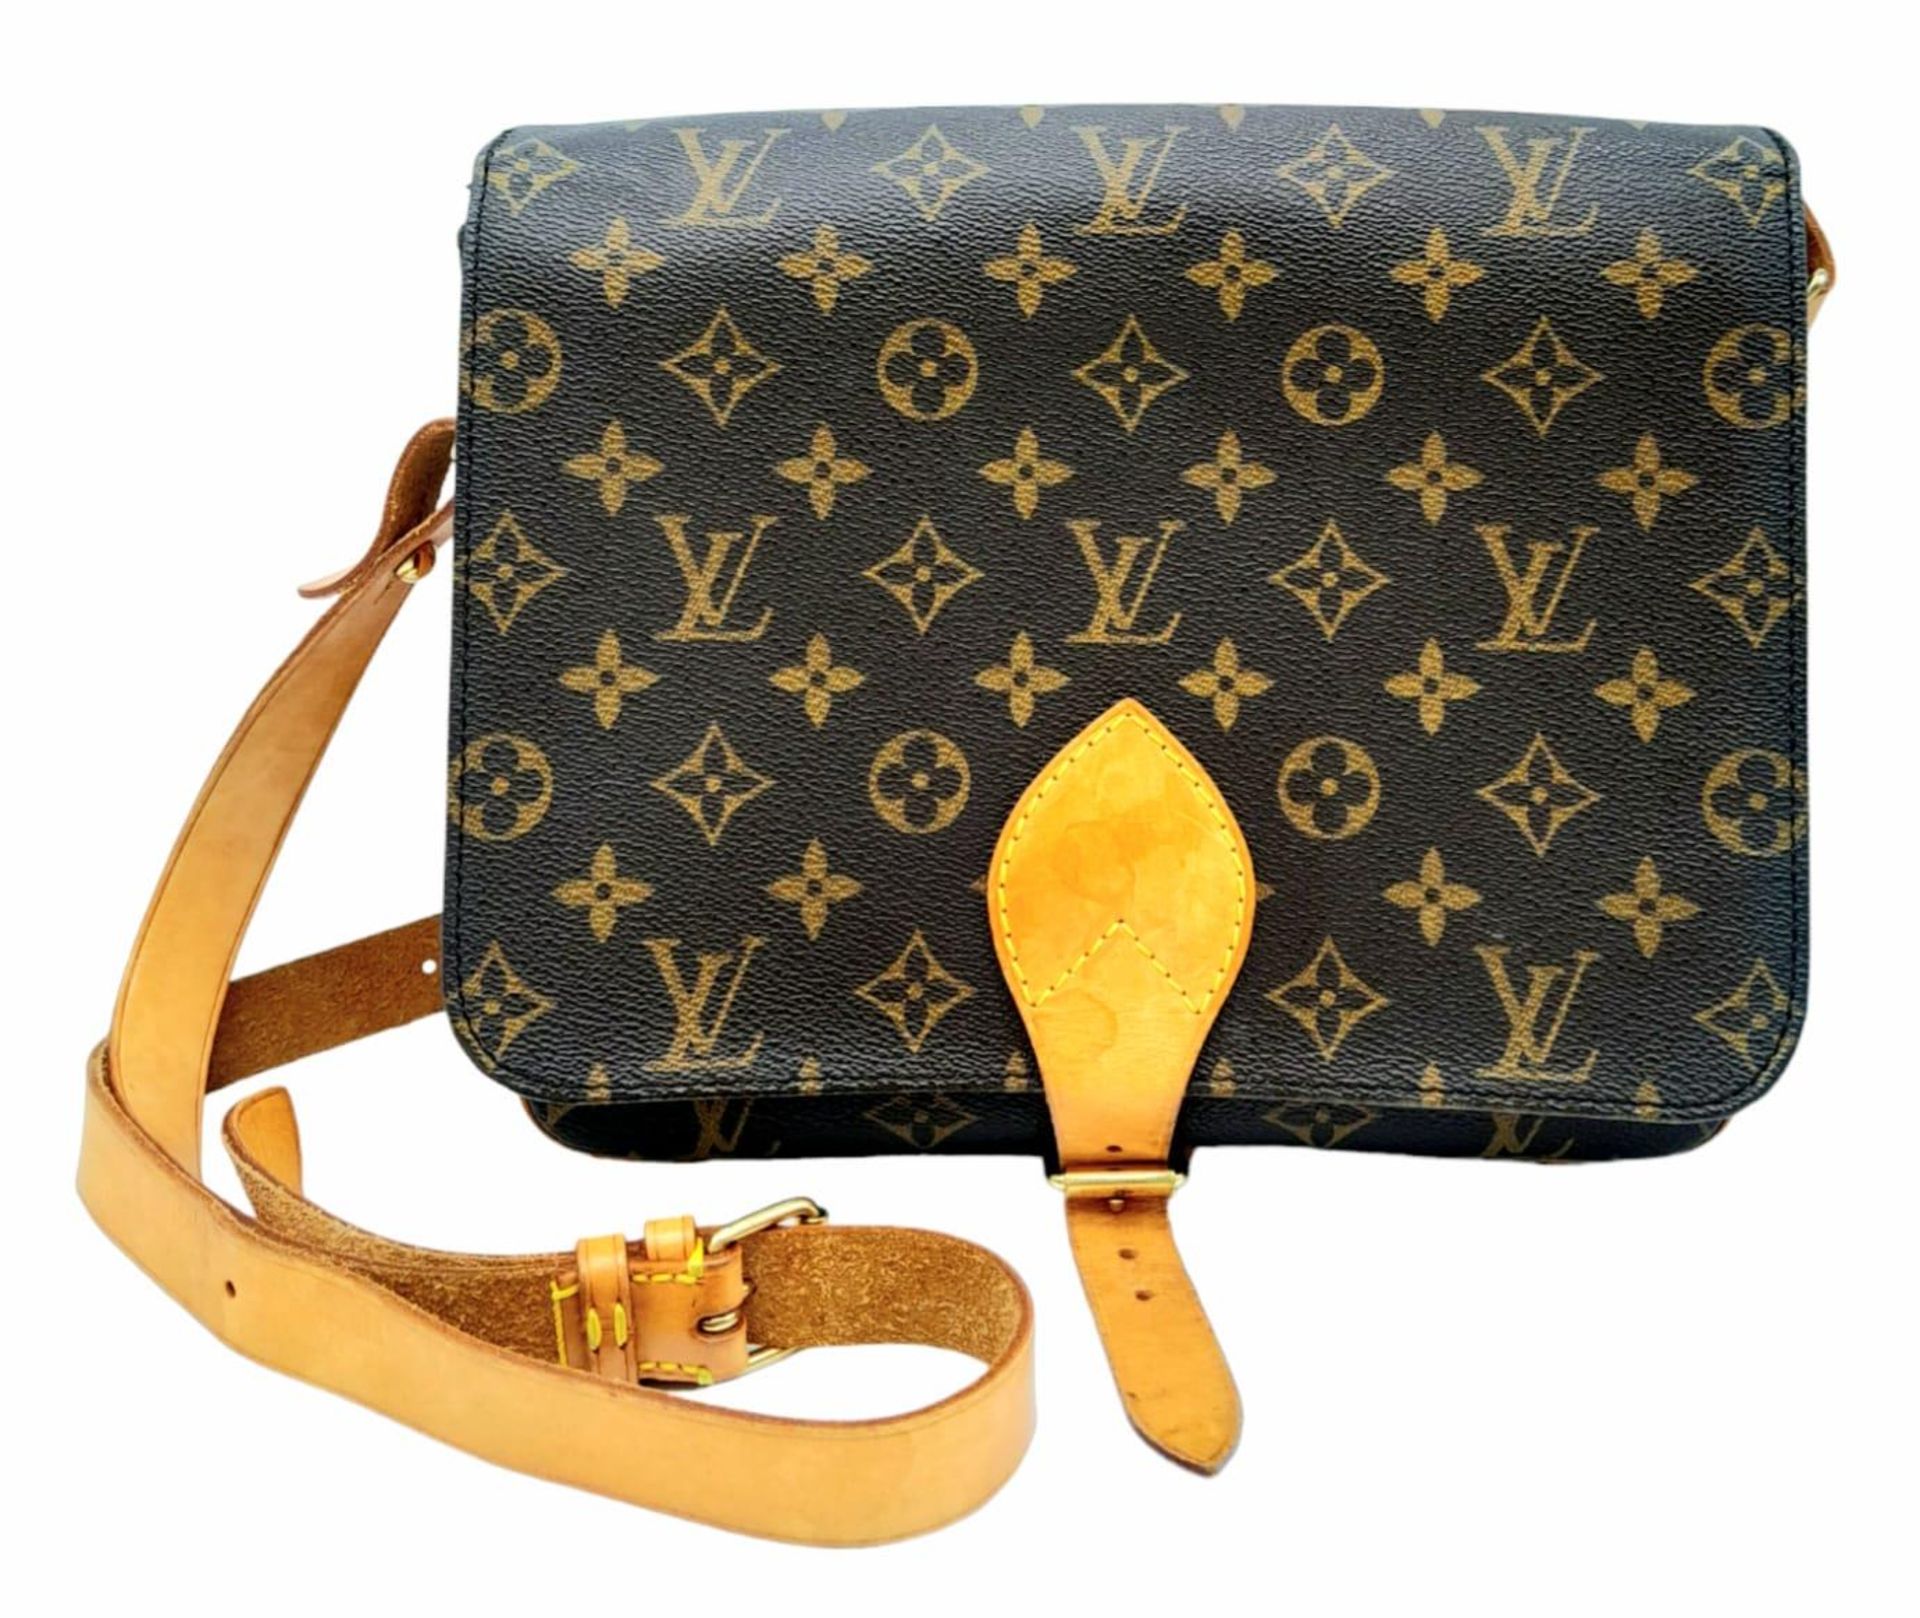 A Vintage Louis Vuitton Cartouchiere Shoulder Bag. LV monogram canvas exterior with cow-hide leather